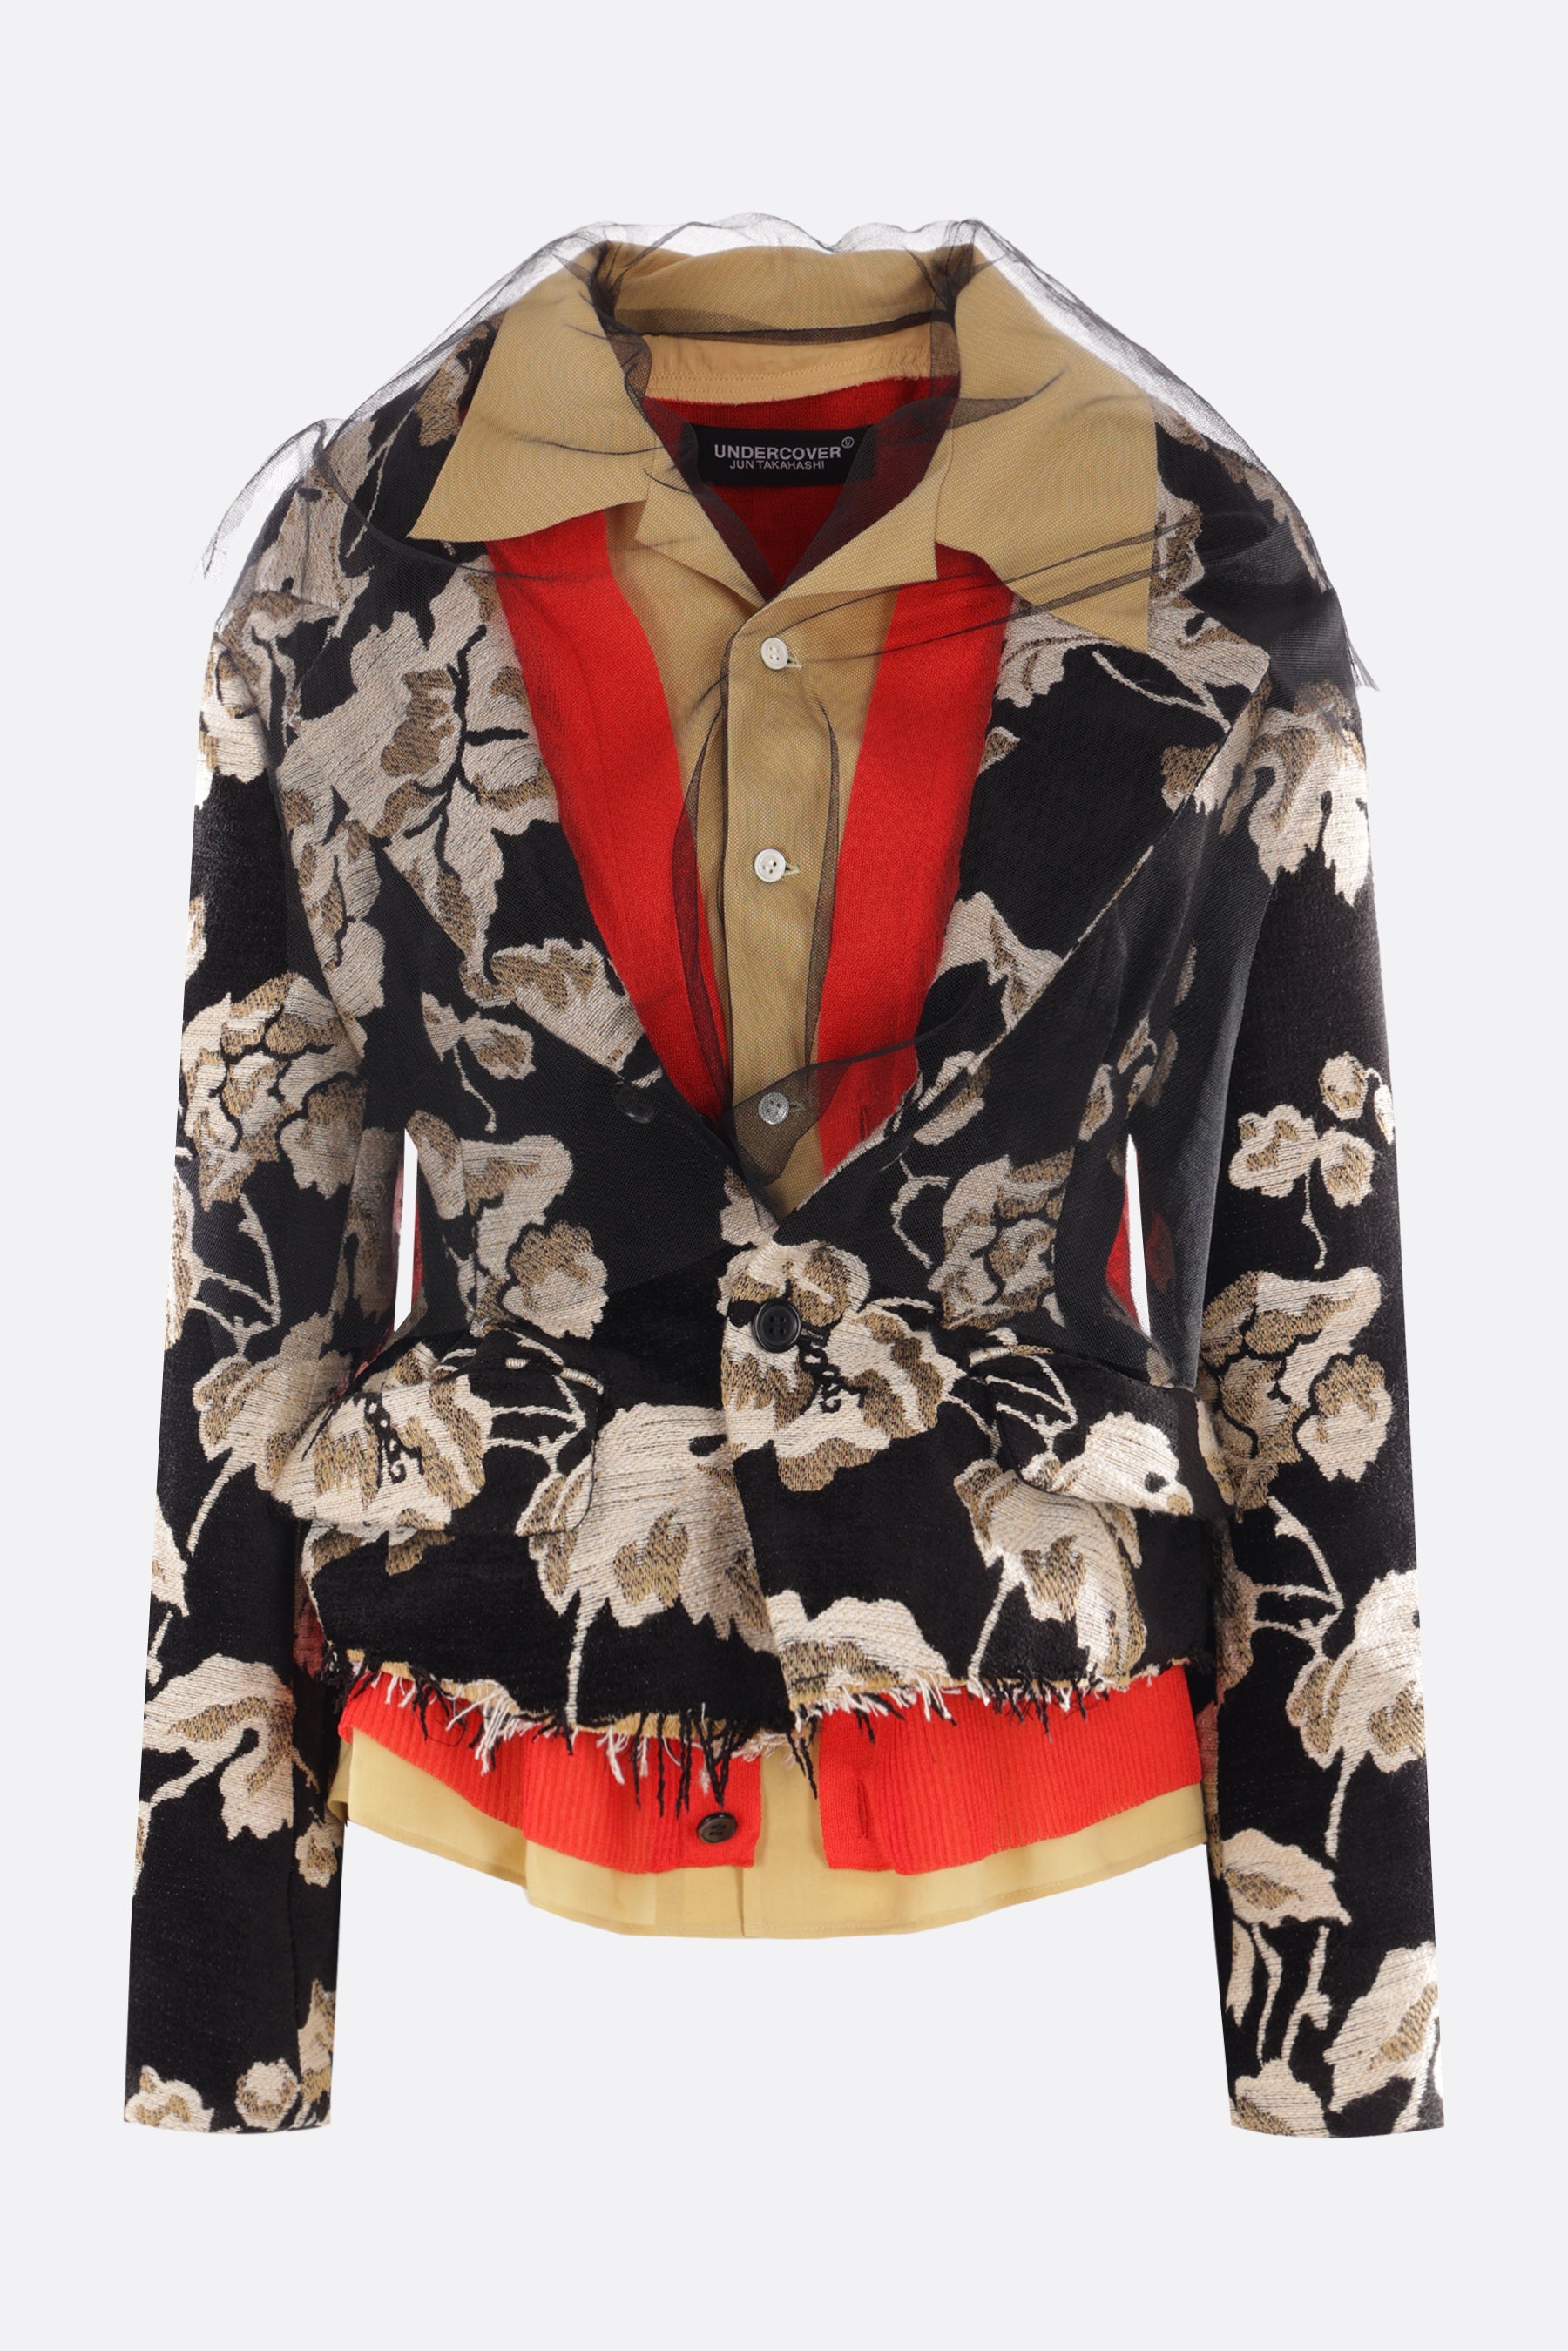 giacca multistrato in jacquard, maglia e popeline